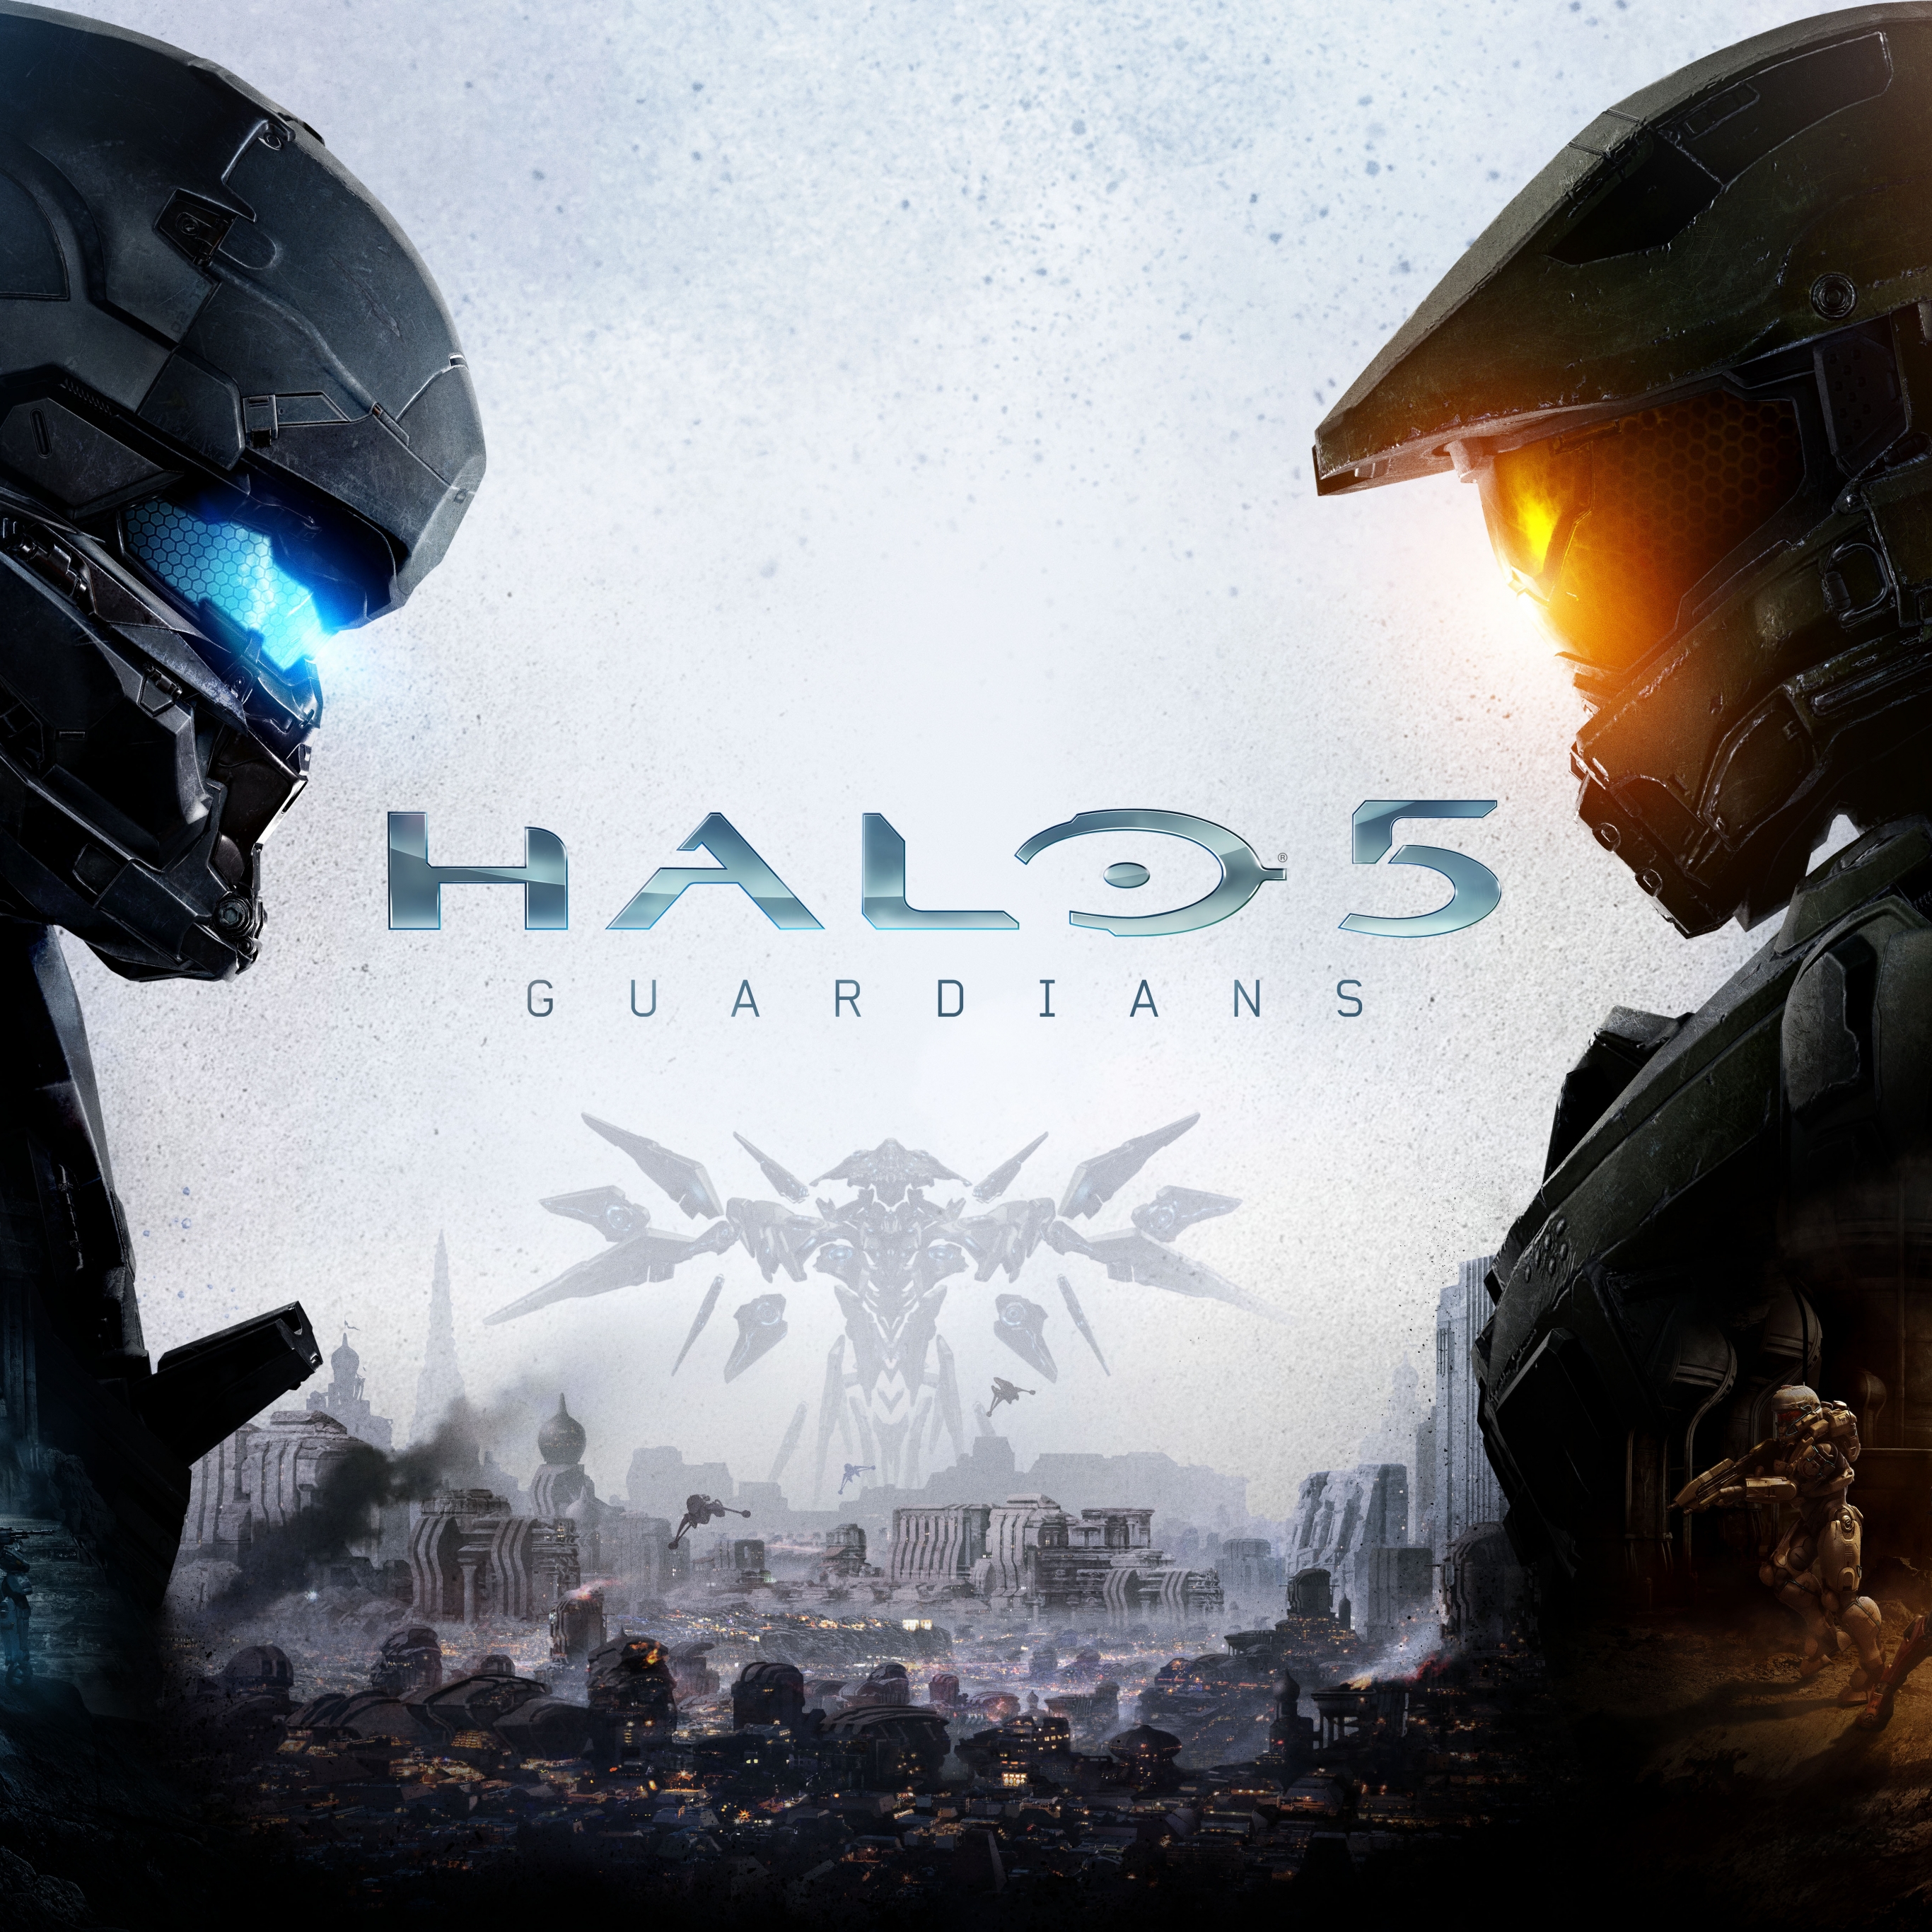 Baixe gratuitamente a imagem Aréola, Videogame, Comandante, Halo 5: Guardians na área de trabalho do seu PC